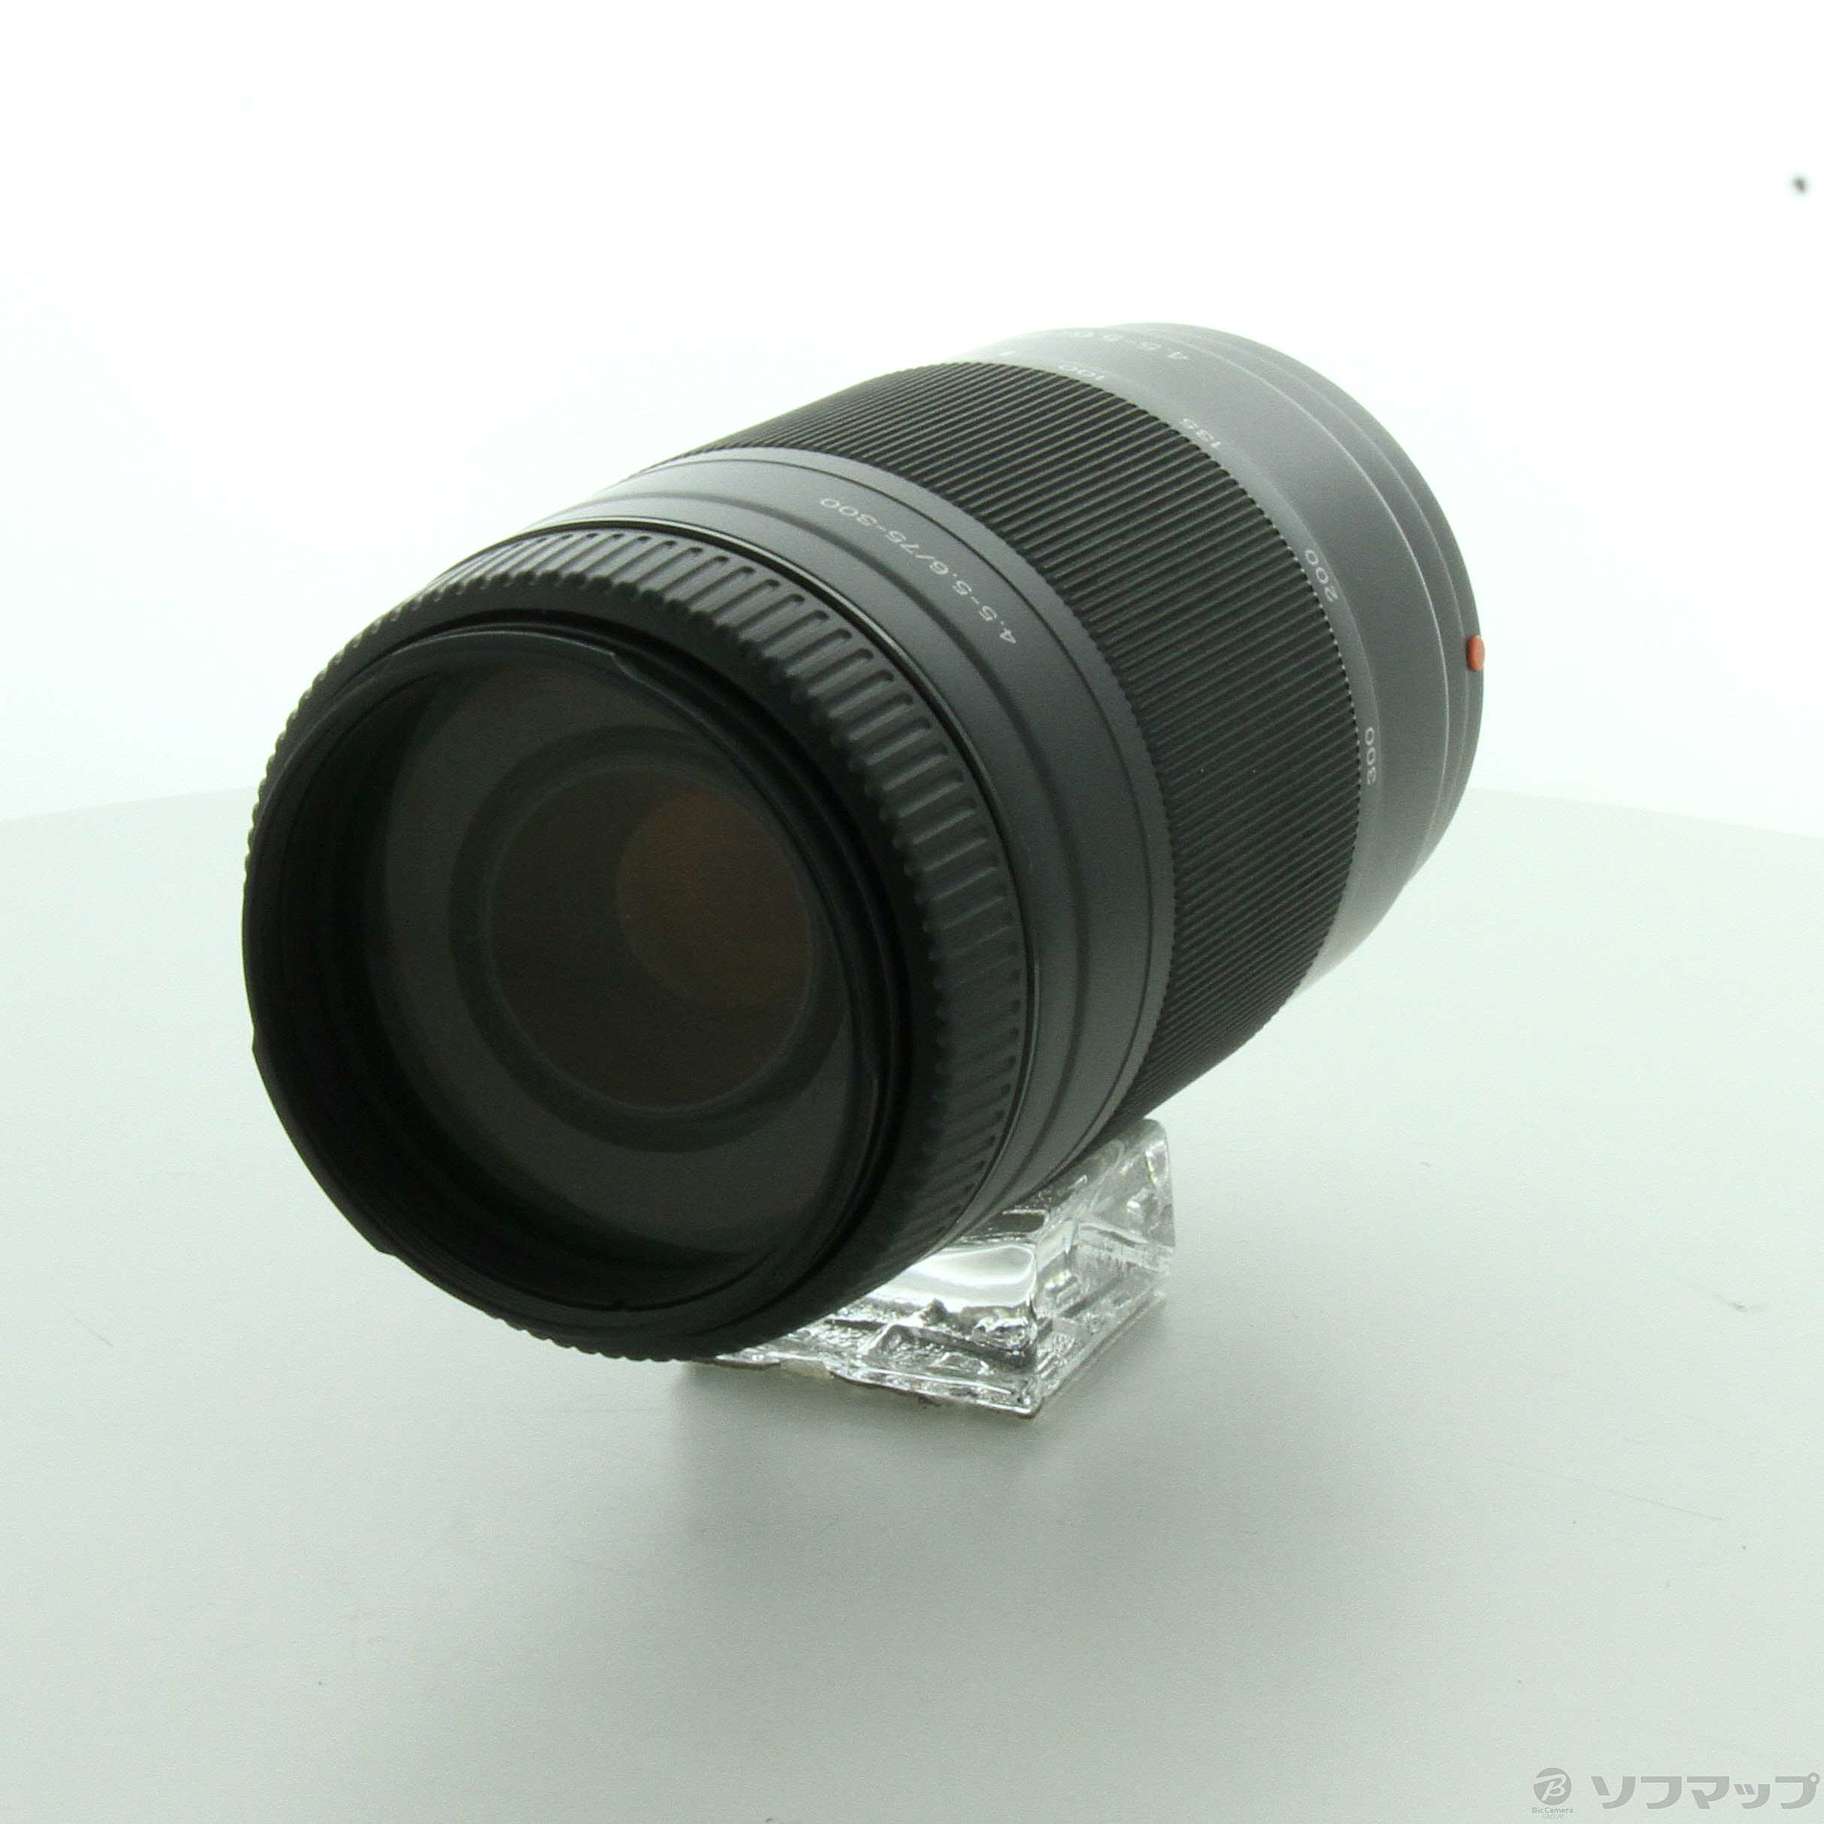 ソニー 望遠レンズ 75-300mm4.5-5.6 SONY - レンズ(ズーム)